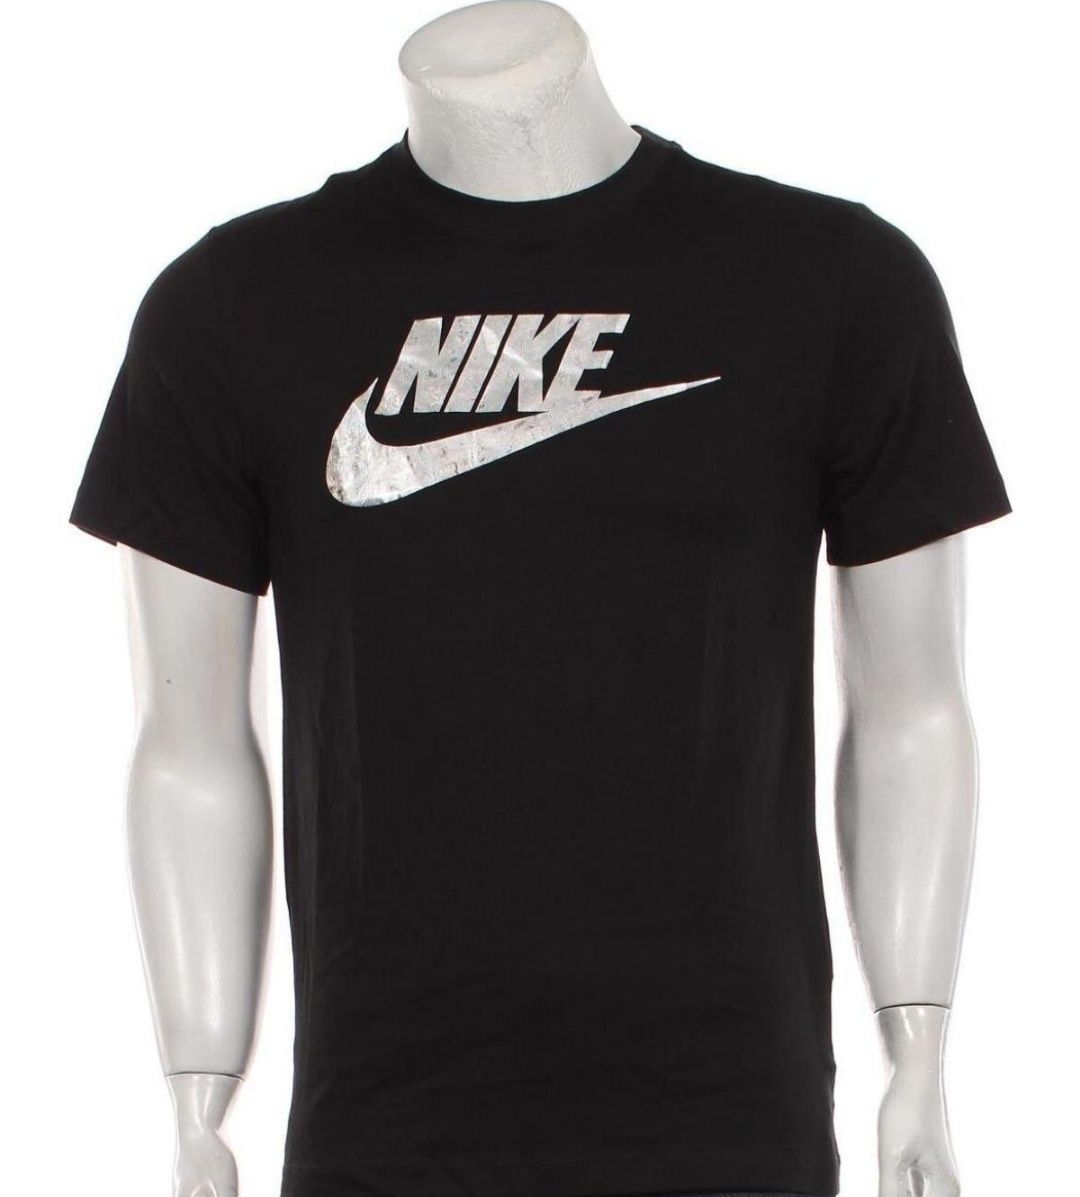 Nike, Ellesse, Puma, Mister tee оригинални тениски с етикет, размер S